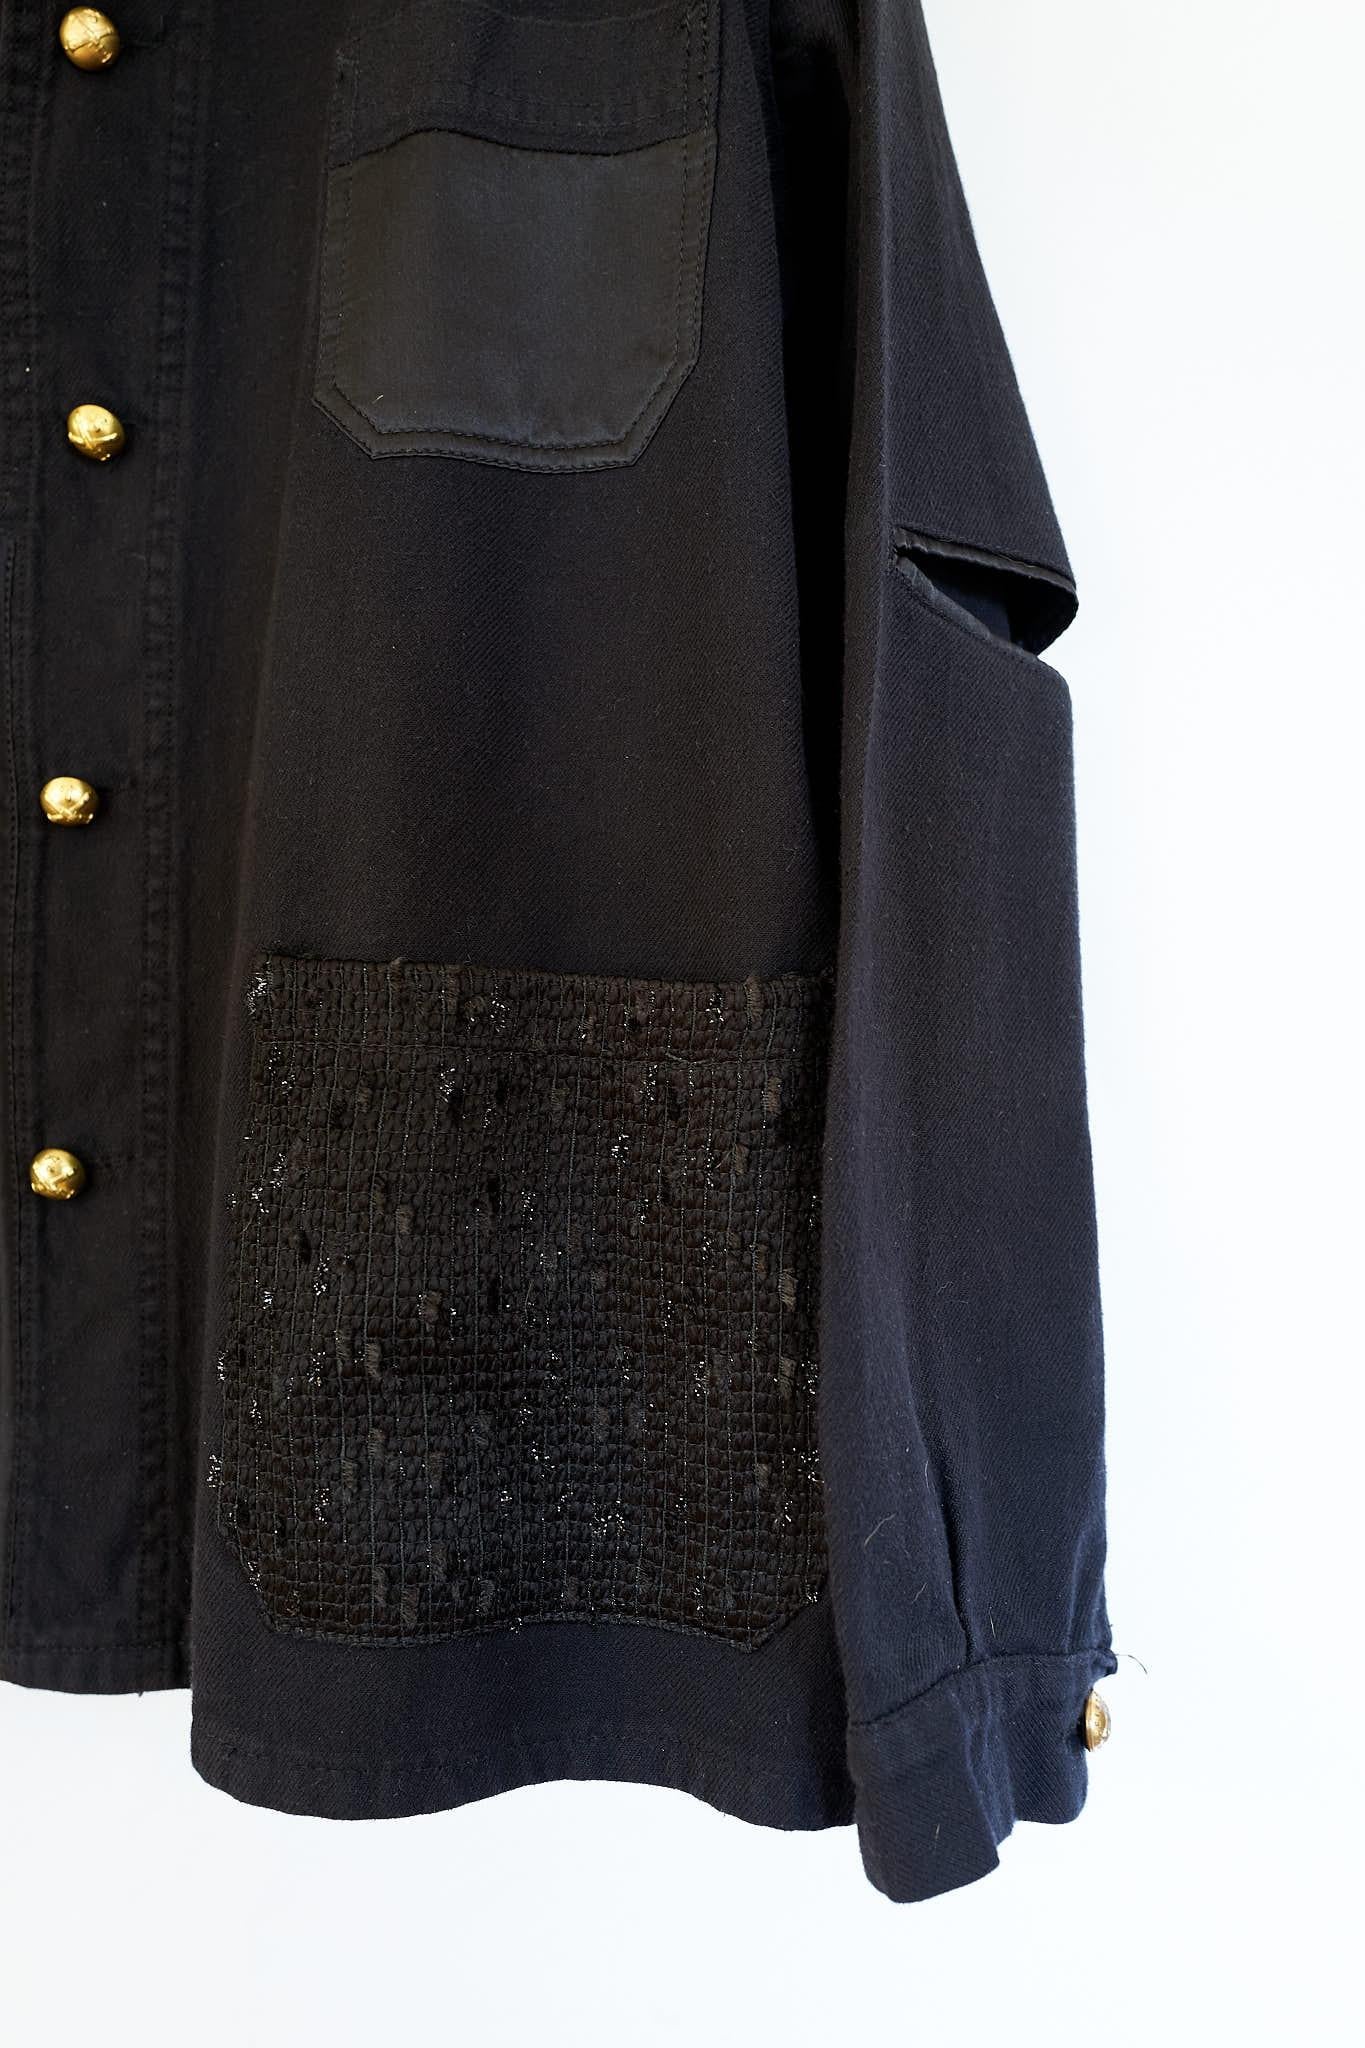 Black Jacket Blazer Recycled Vintage Silk Tweed One of a kind J Dauphin 2